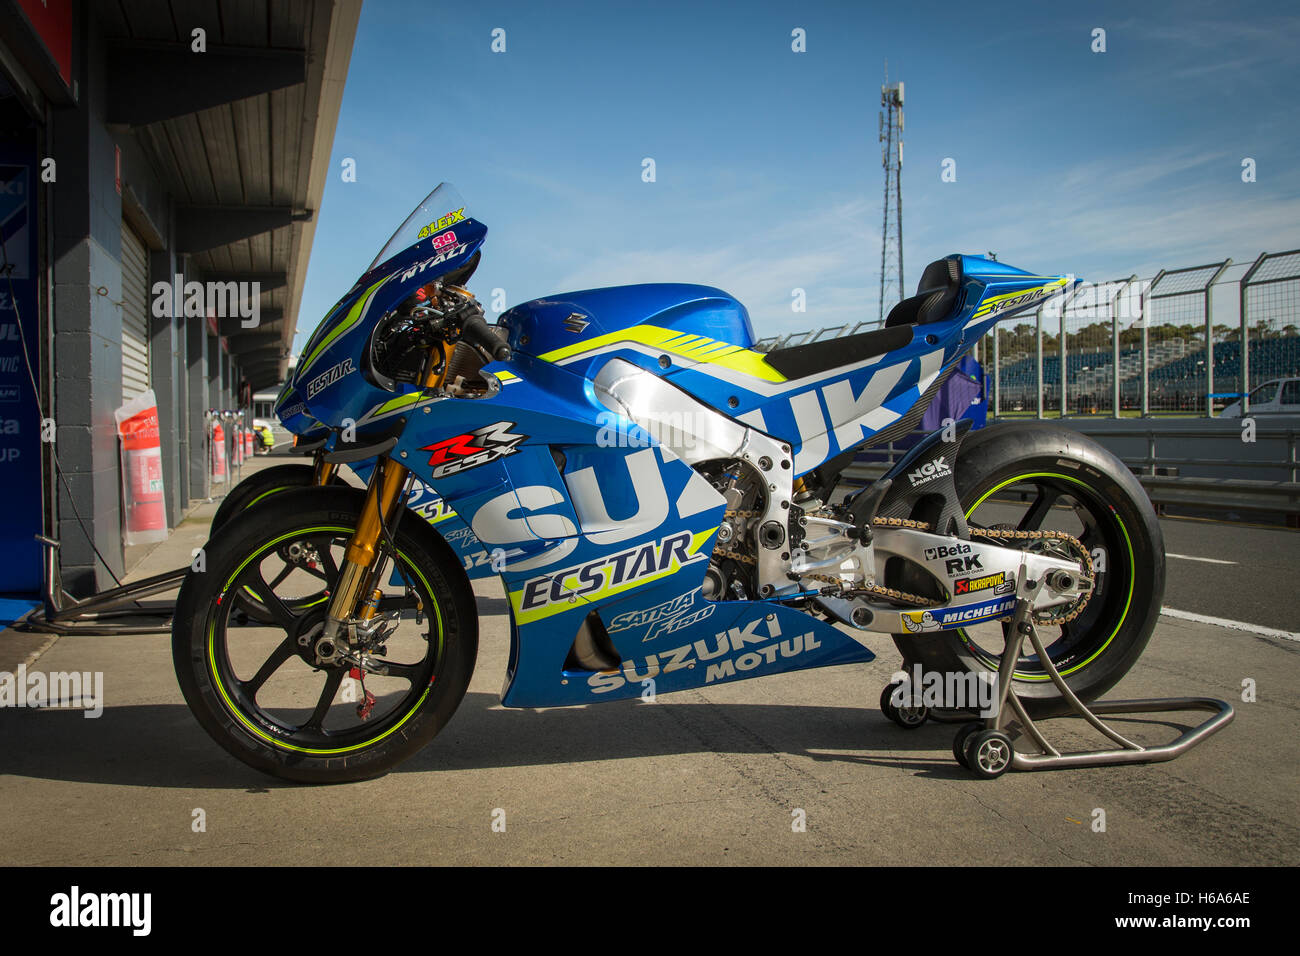 Suzuki Ecstar MotoGP Team. Thursday, 20 October, 2016. Phillip Island, Australia. Stock Photo